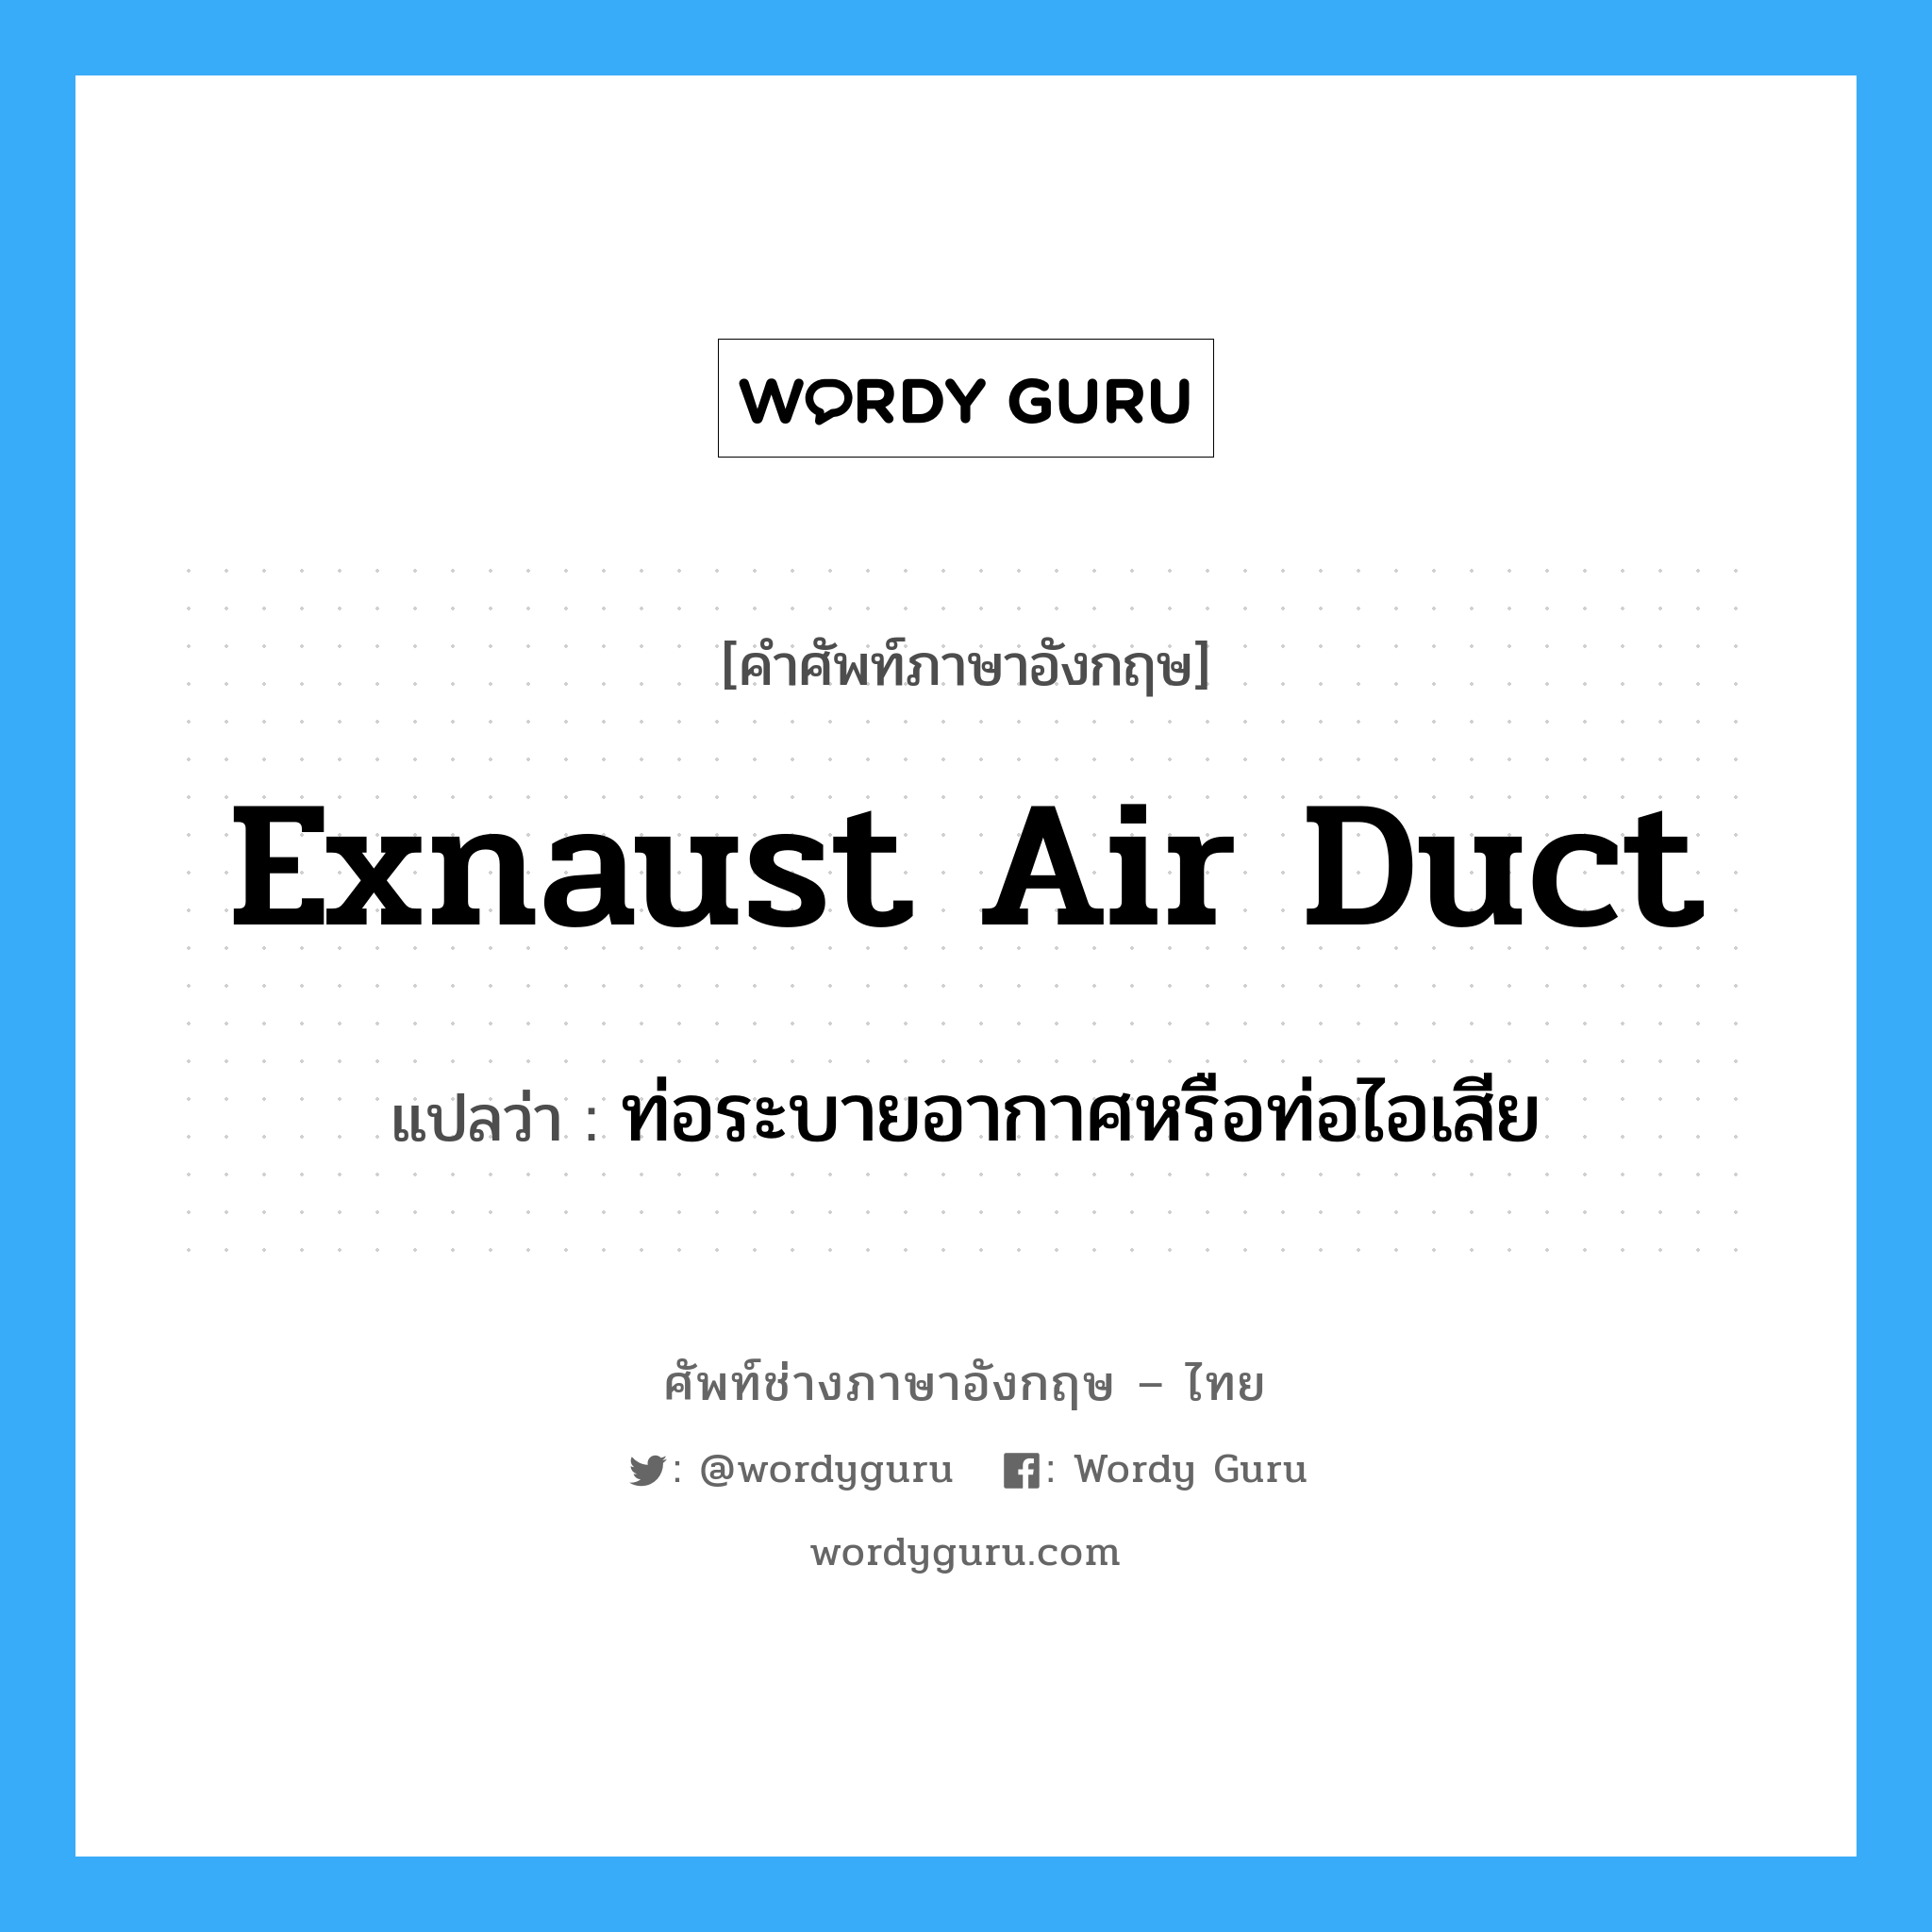 ท่อระบายอากาศหรือท่อไอเสีย ภาษาอังกฤษ?, คำศัพท์ช่างภาษาอังกฤษ - ไทย ท่อระบายอากาศหรือท่อไอเสีย คำศัพท์ภาษาอังกฤษ ท่อระบายอากาศหรือท่อไอเสีย แปลว่า exnaust air duct